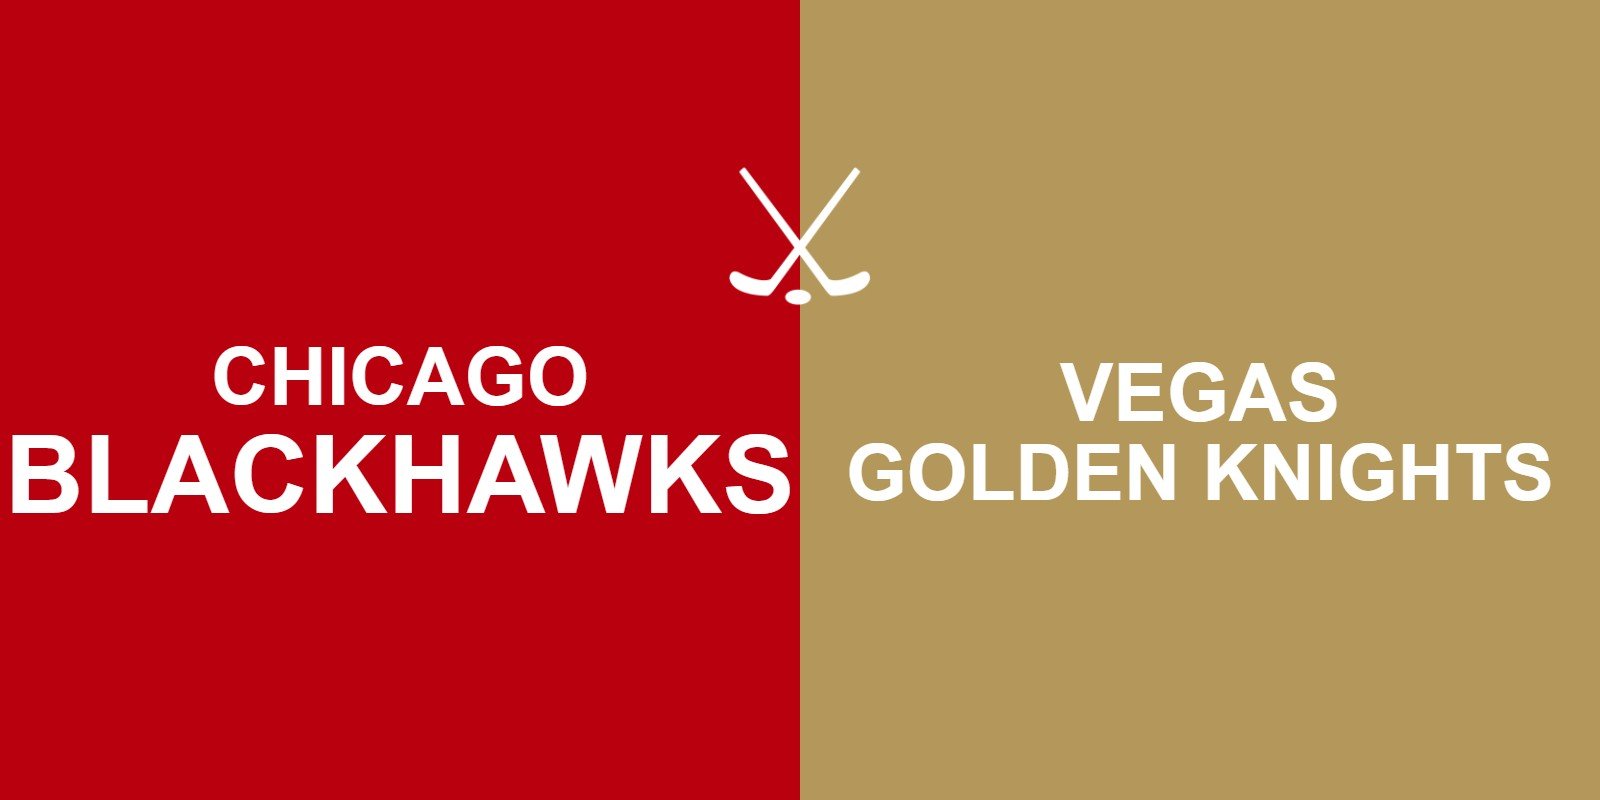 Blackhawks vs Golden Knights